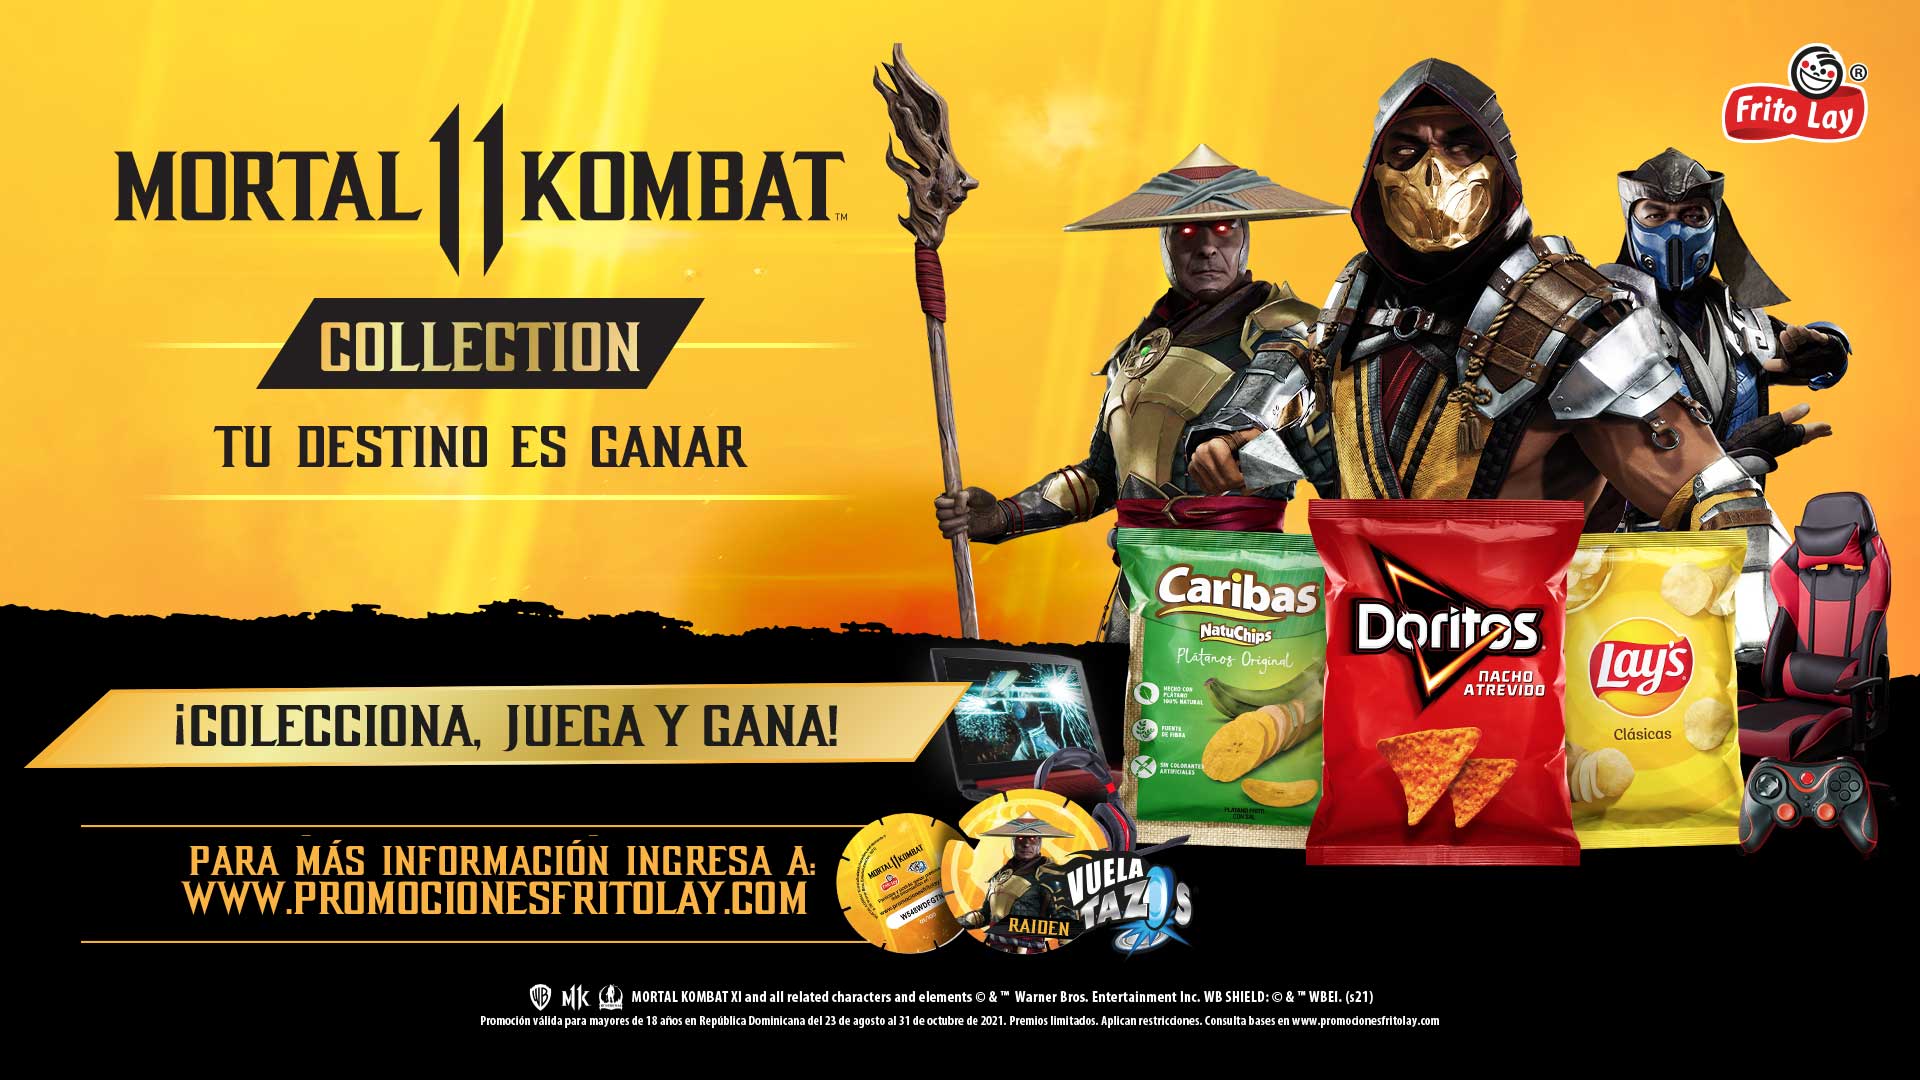 Fritolay-y-Mortal-Kombat-te-regalan-varios-premios-entra-para-participar-en-la-promocion-GamersrRD